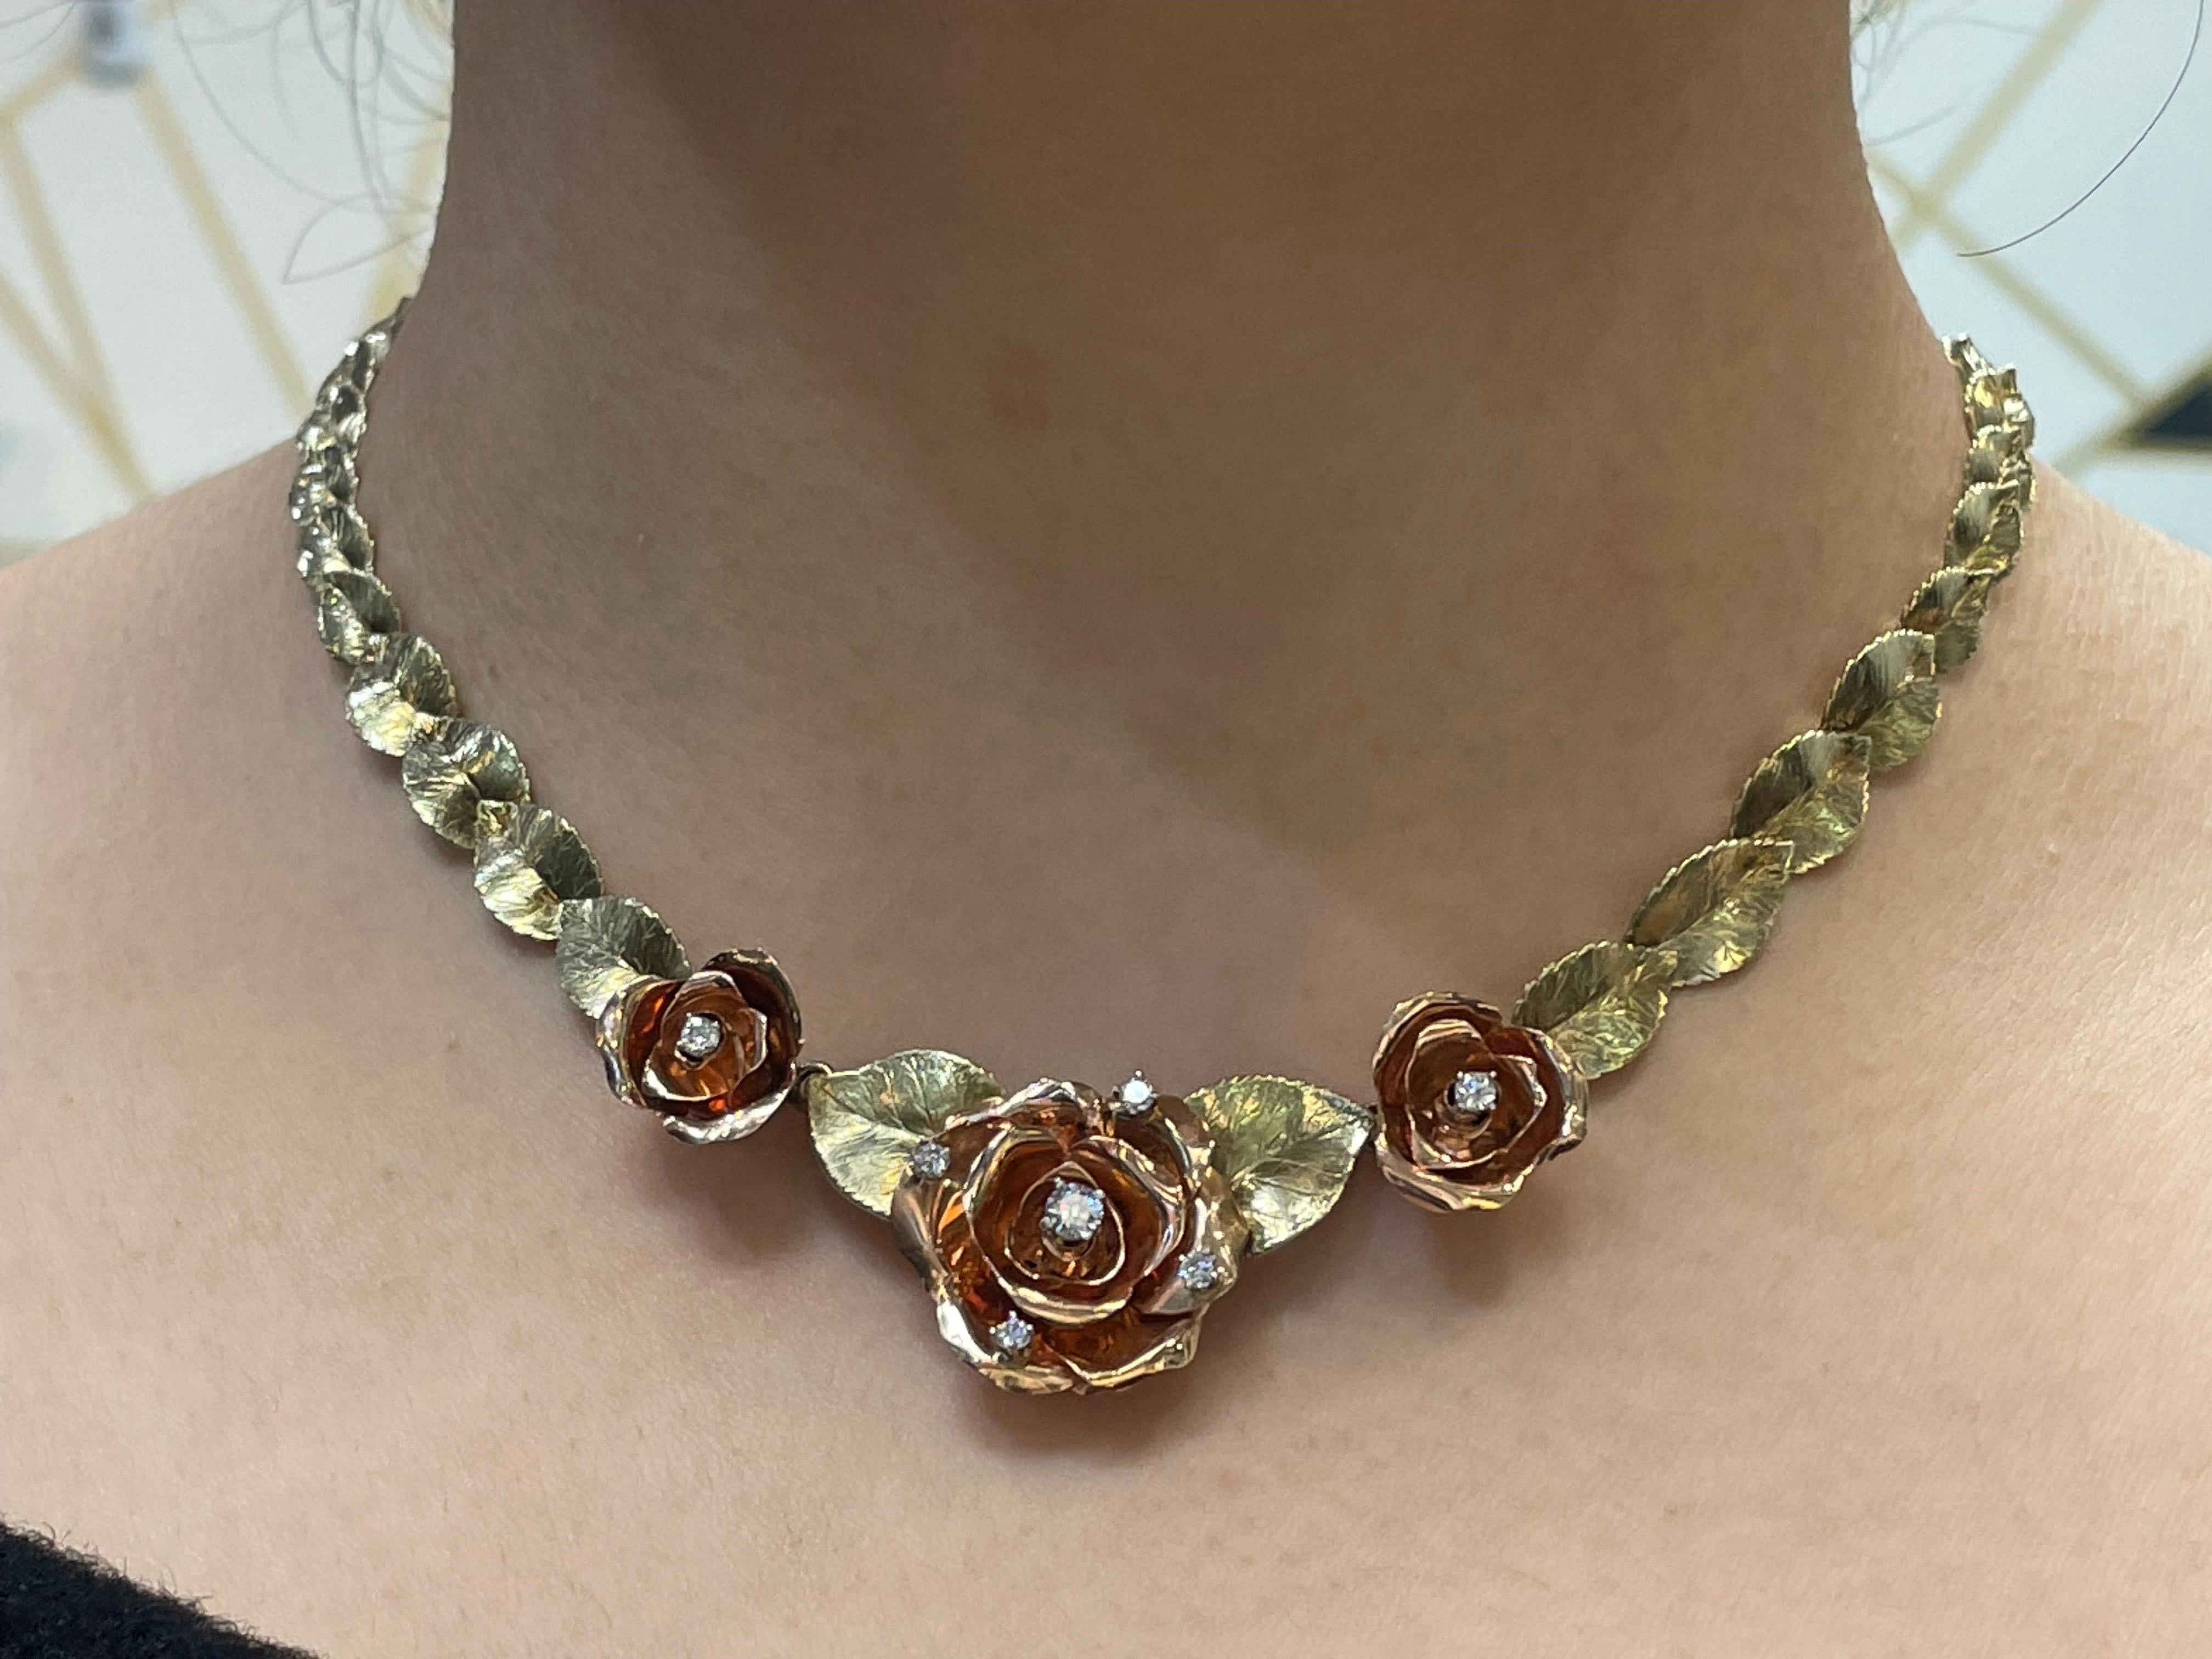 Retro-Blumen-Halskette
 
Zweifarbige Blumenkette aus Gold mit drei Rosen aus Roségold, verziert mit Diamanten im Rundschliff und Blättern aus Gelbgold. 

Hergestellt um 1940

Ungefähre Länge: 16